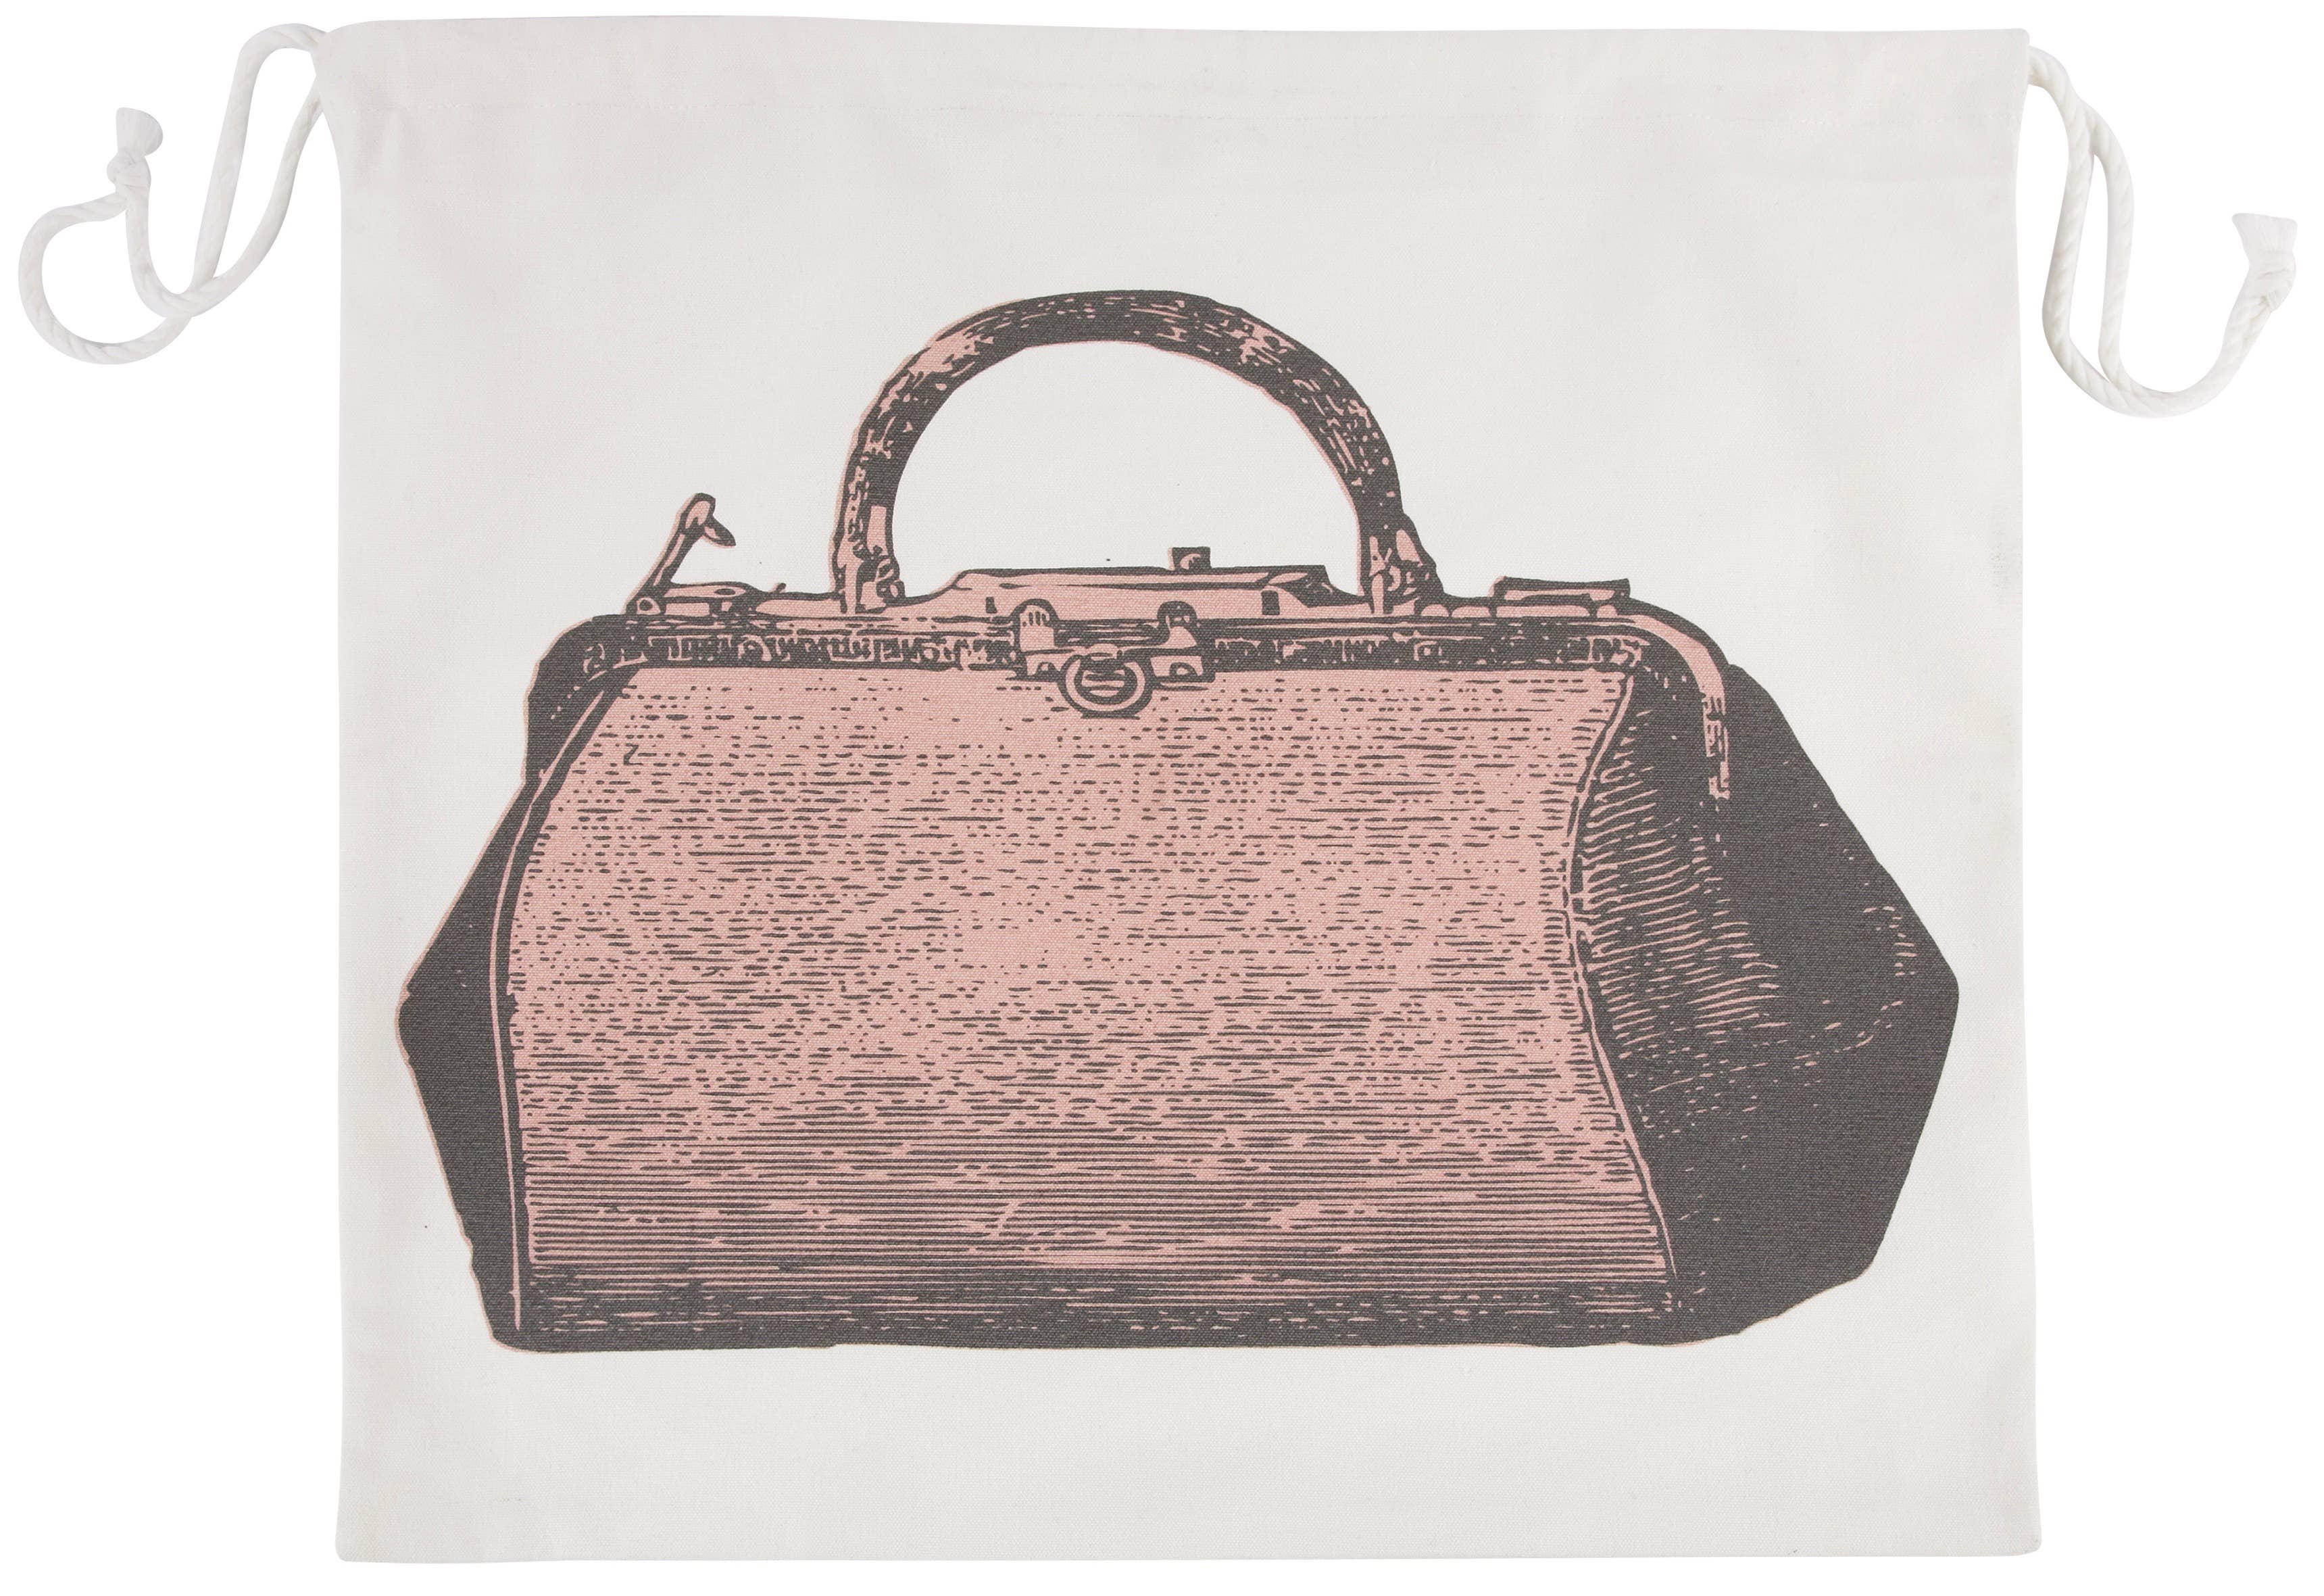 Vintage-Inspired Travel Bag | Ladies Purse